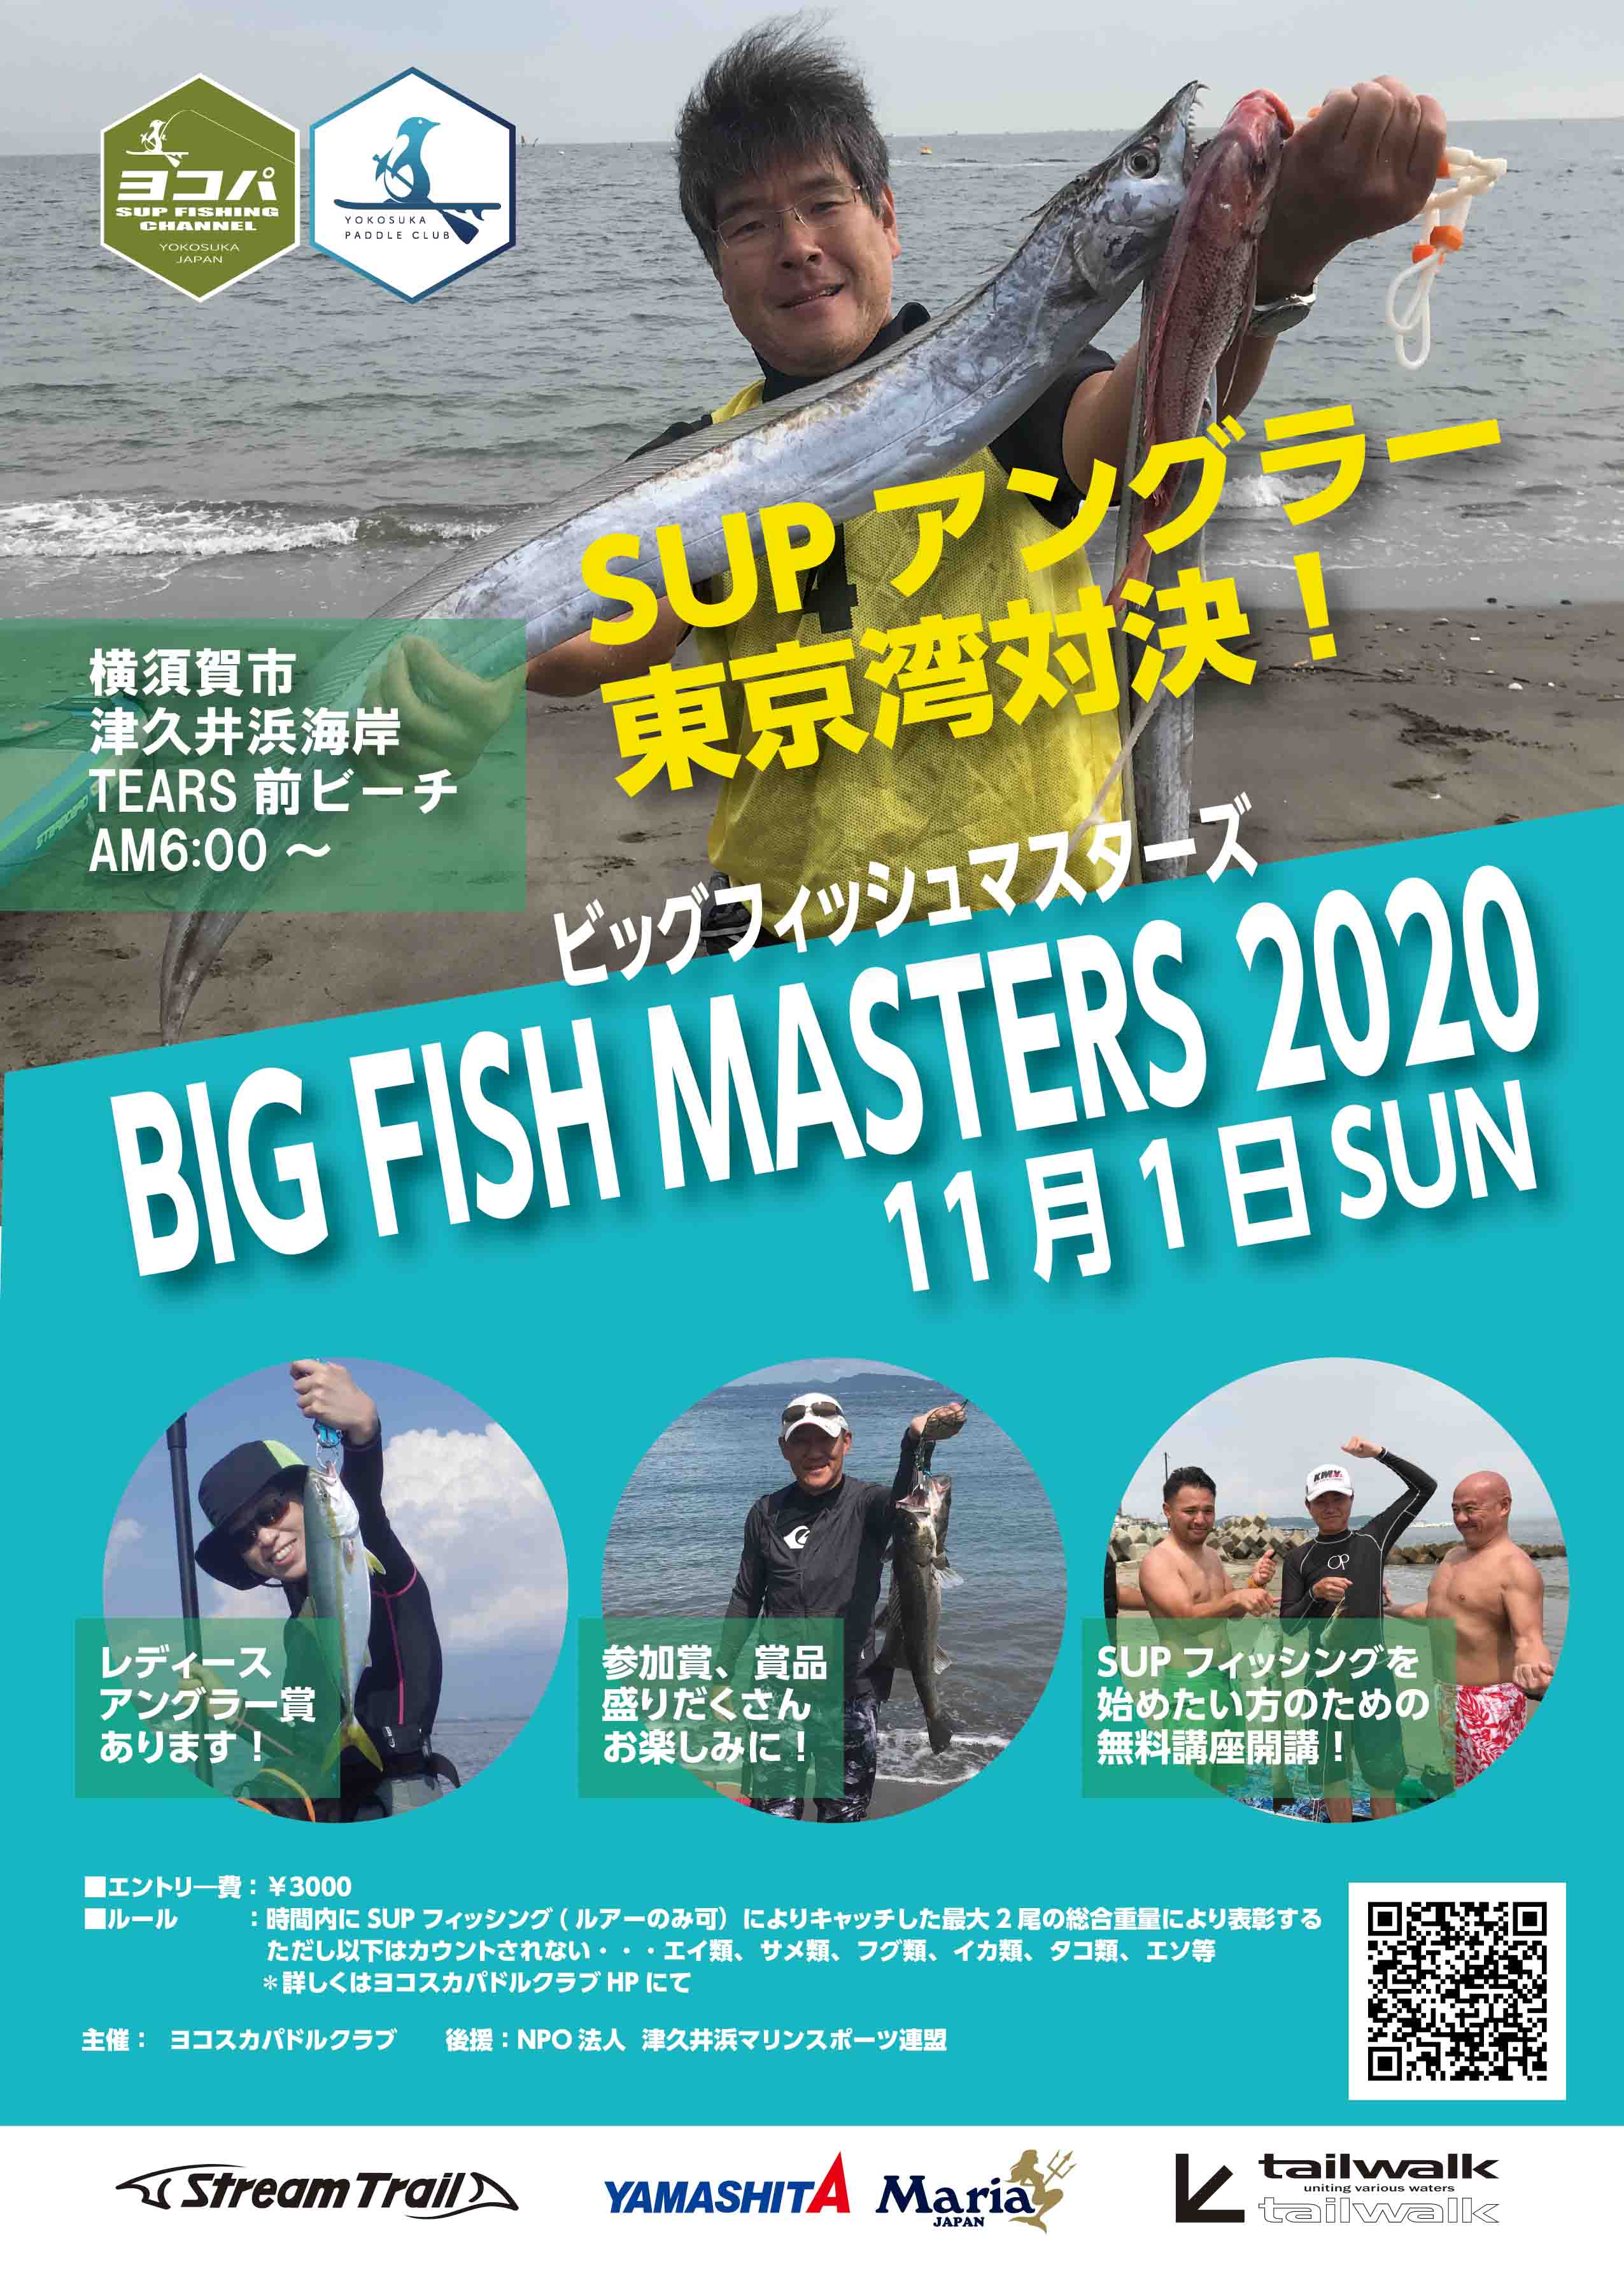 東京湾で初のSUPフィッシング大会「BIG FISH MUSTERS 2020」を開催！